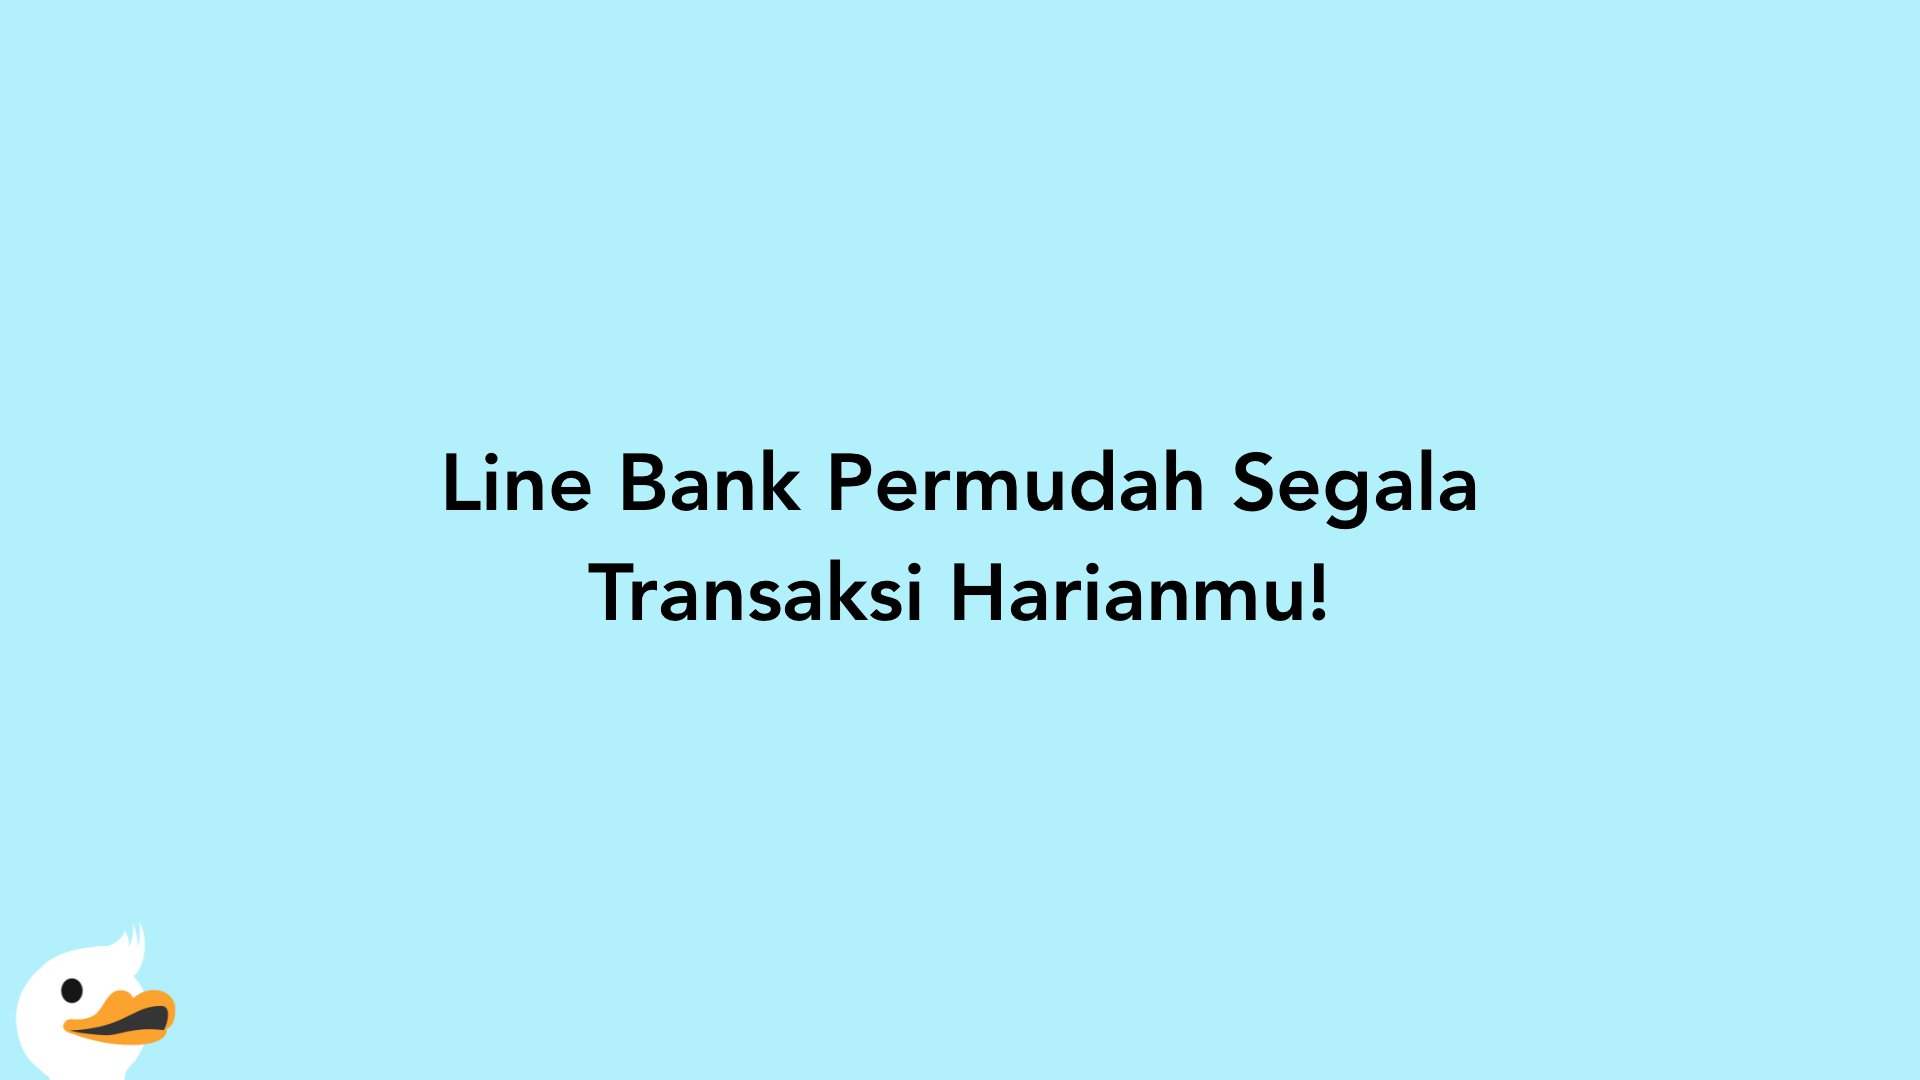 Line Bank Permudah Segala Transaksi Harianmu!